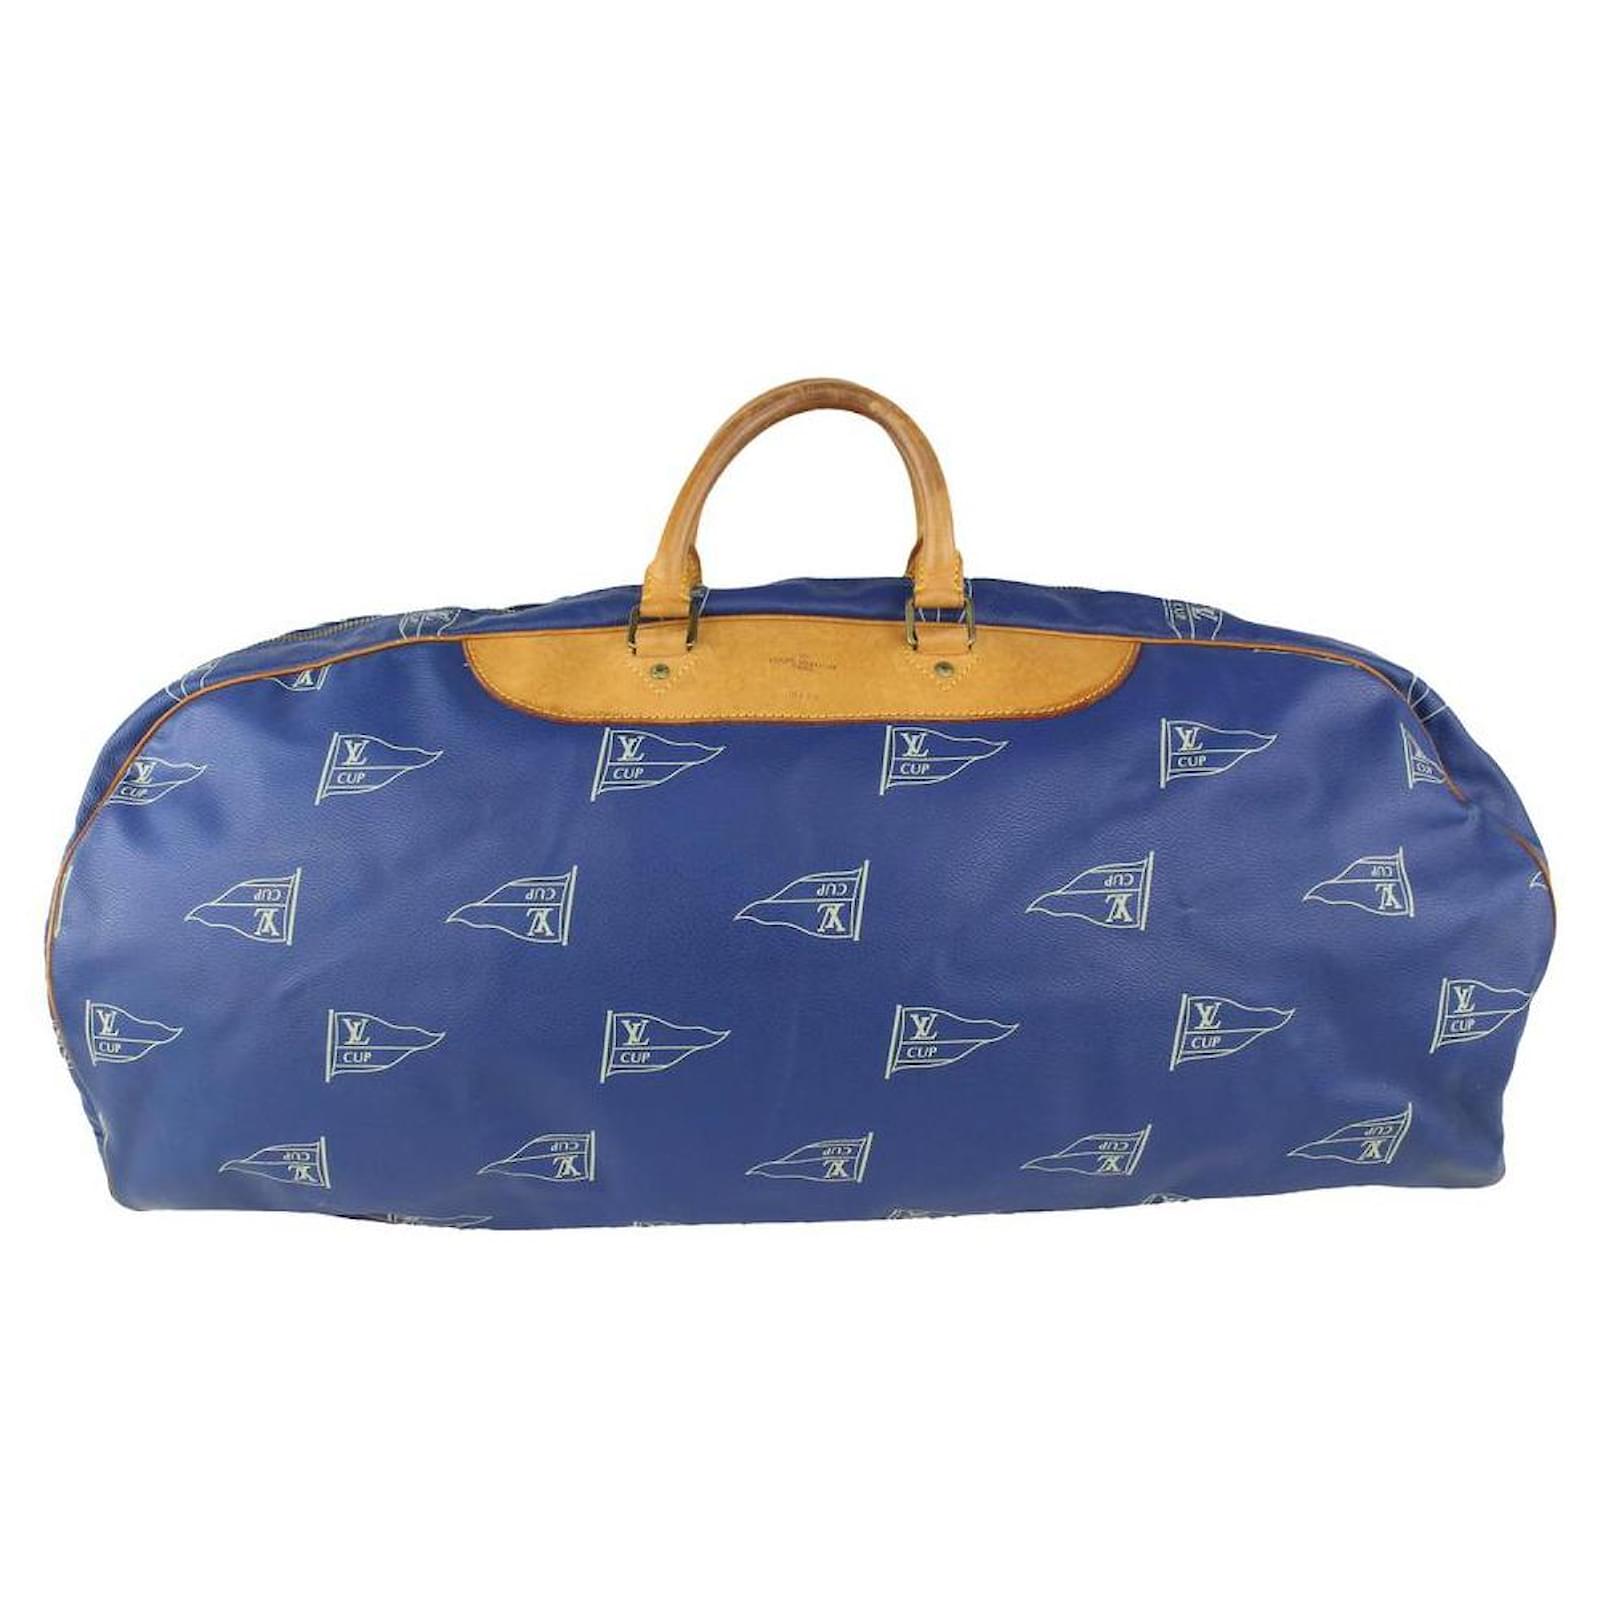 Louis Vuitton Blue LV Cup Sac Plein Air Long Keepall Bag Leather